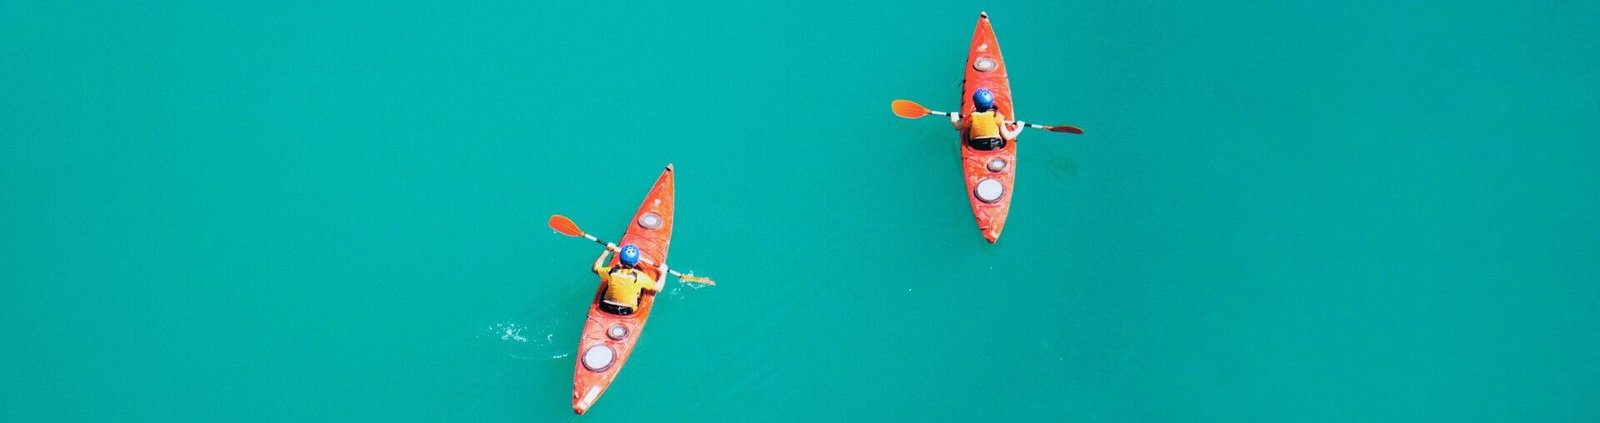 2 kayakistes avec gilet de sauvetage pagaient sur une eau bleue turquoise